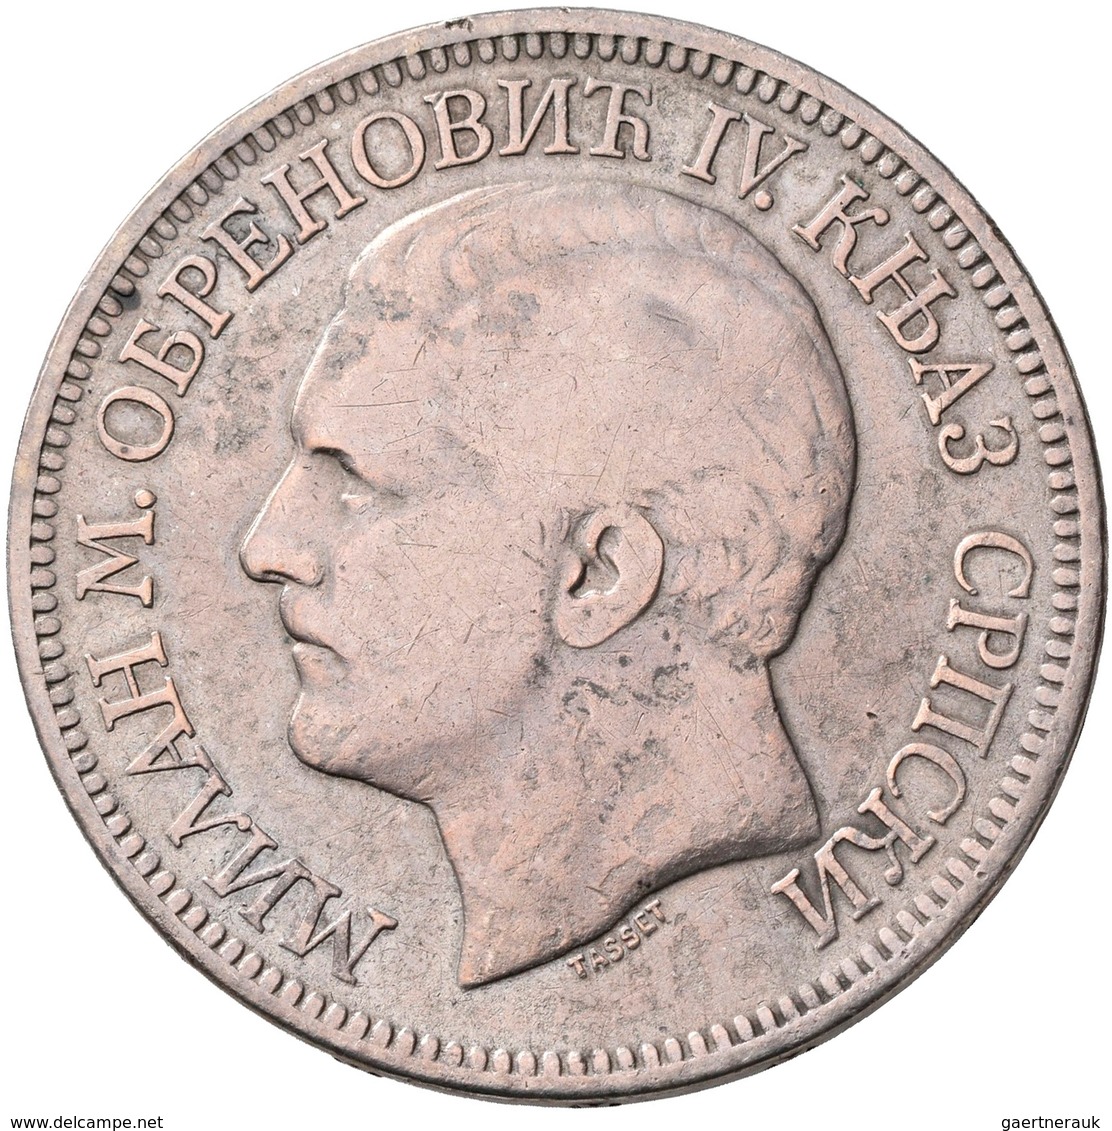 Serbien: Lot 3 Silbermünzen; 5 Dinar 1879, 5 Dinar 1904, 50 Dinar 1932, Sehr Schön, Sehr Schön-vorzü - Serbia